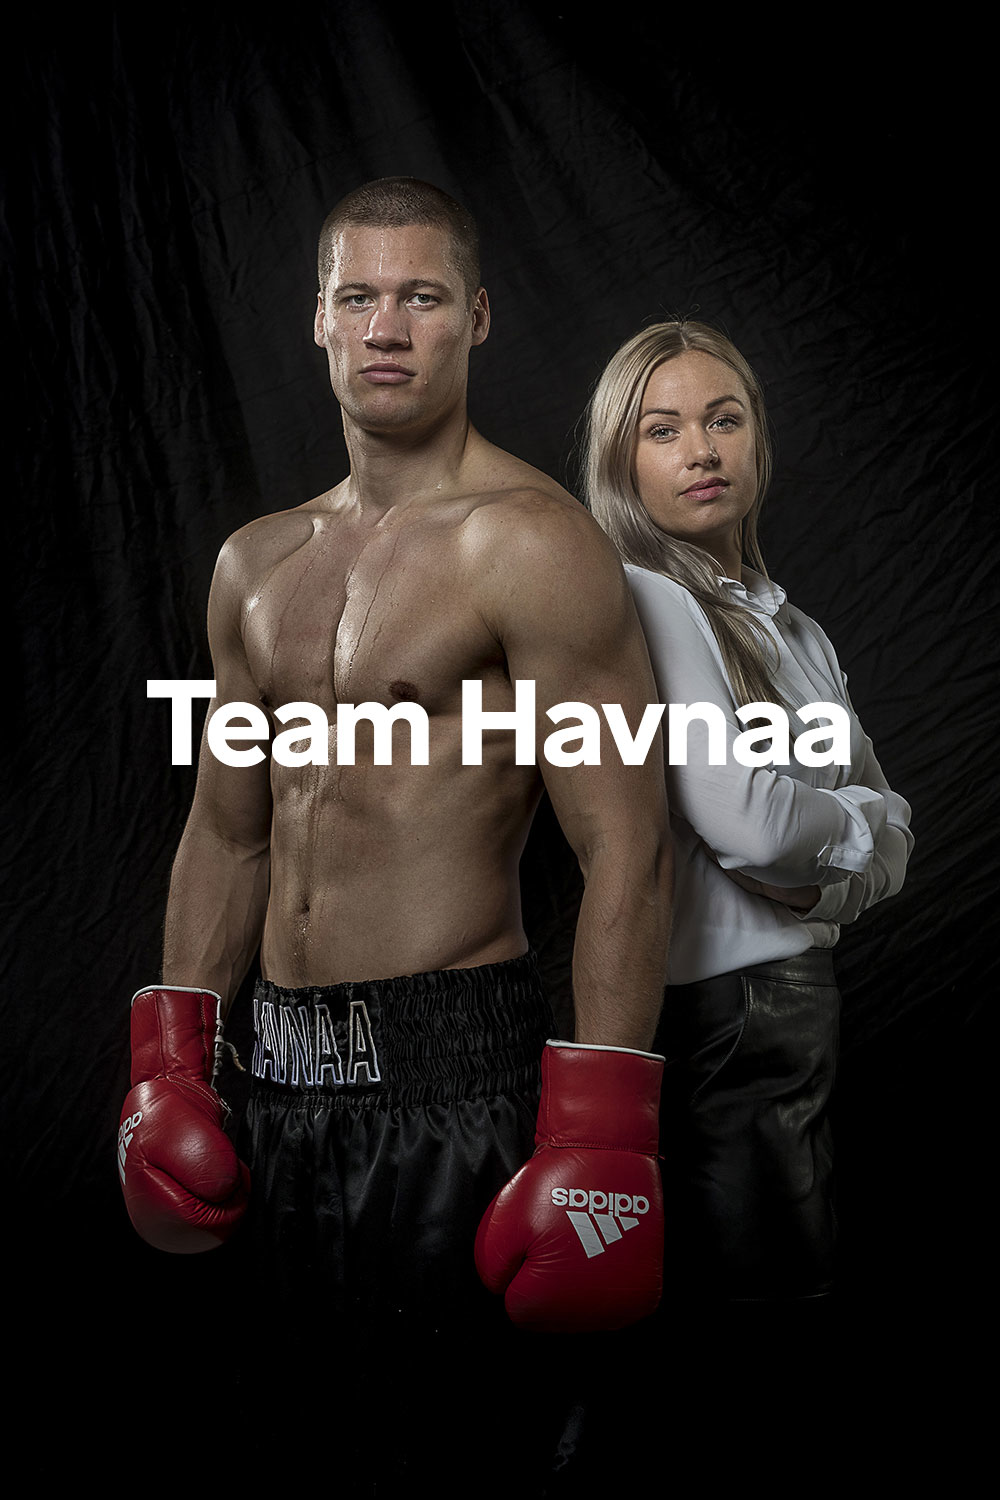 Team Havnaa